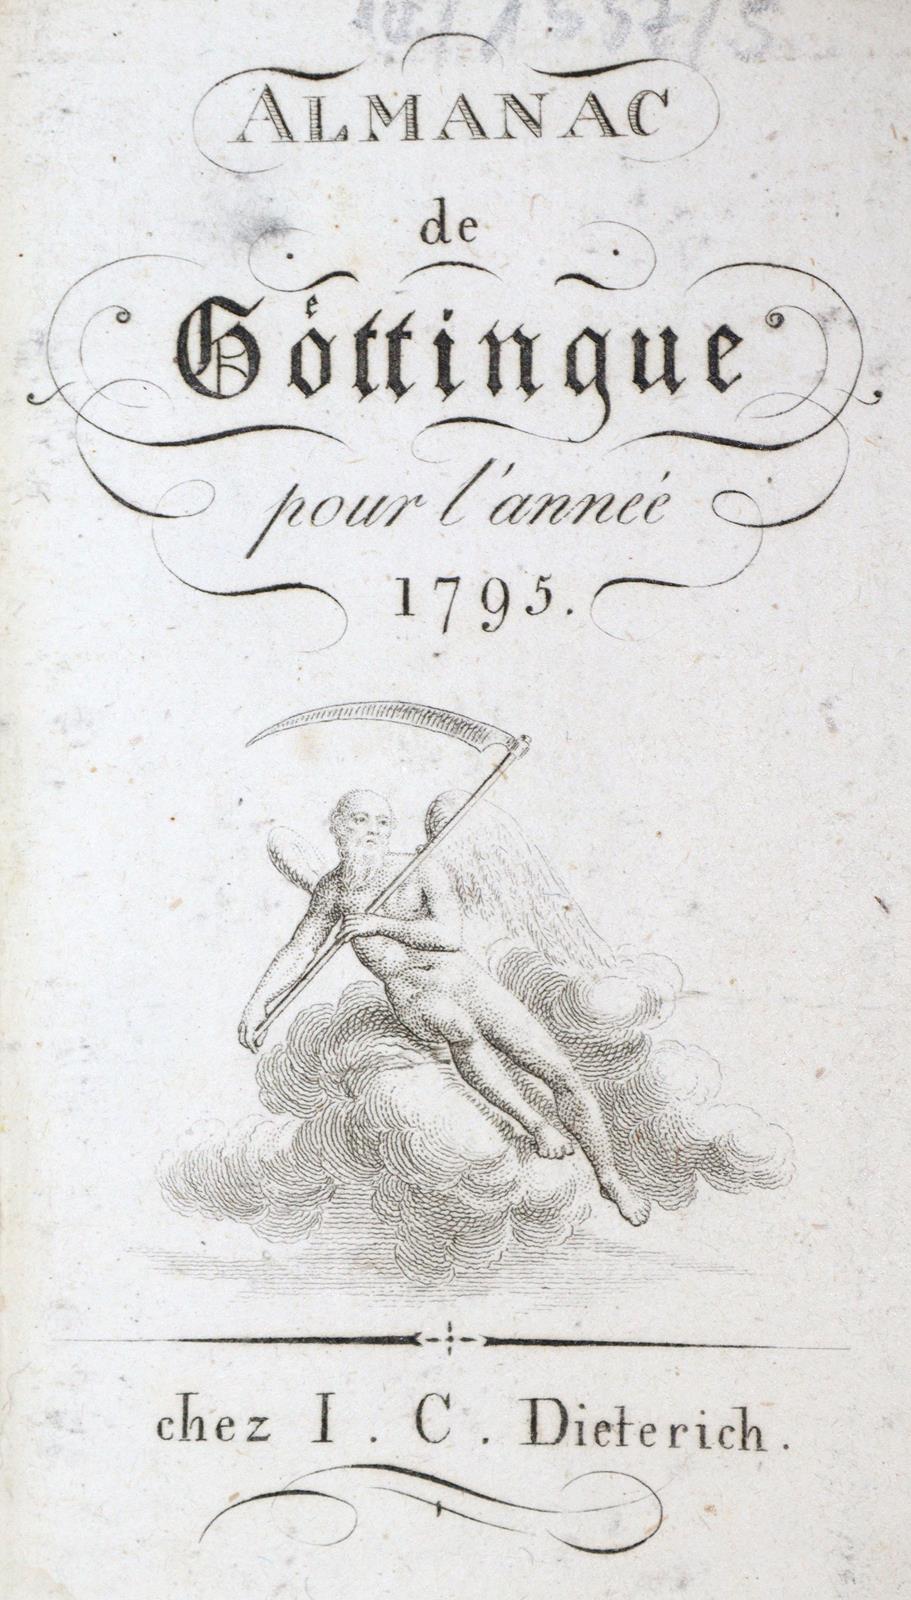 Almanac de Goettingue | Bild Nr.1